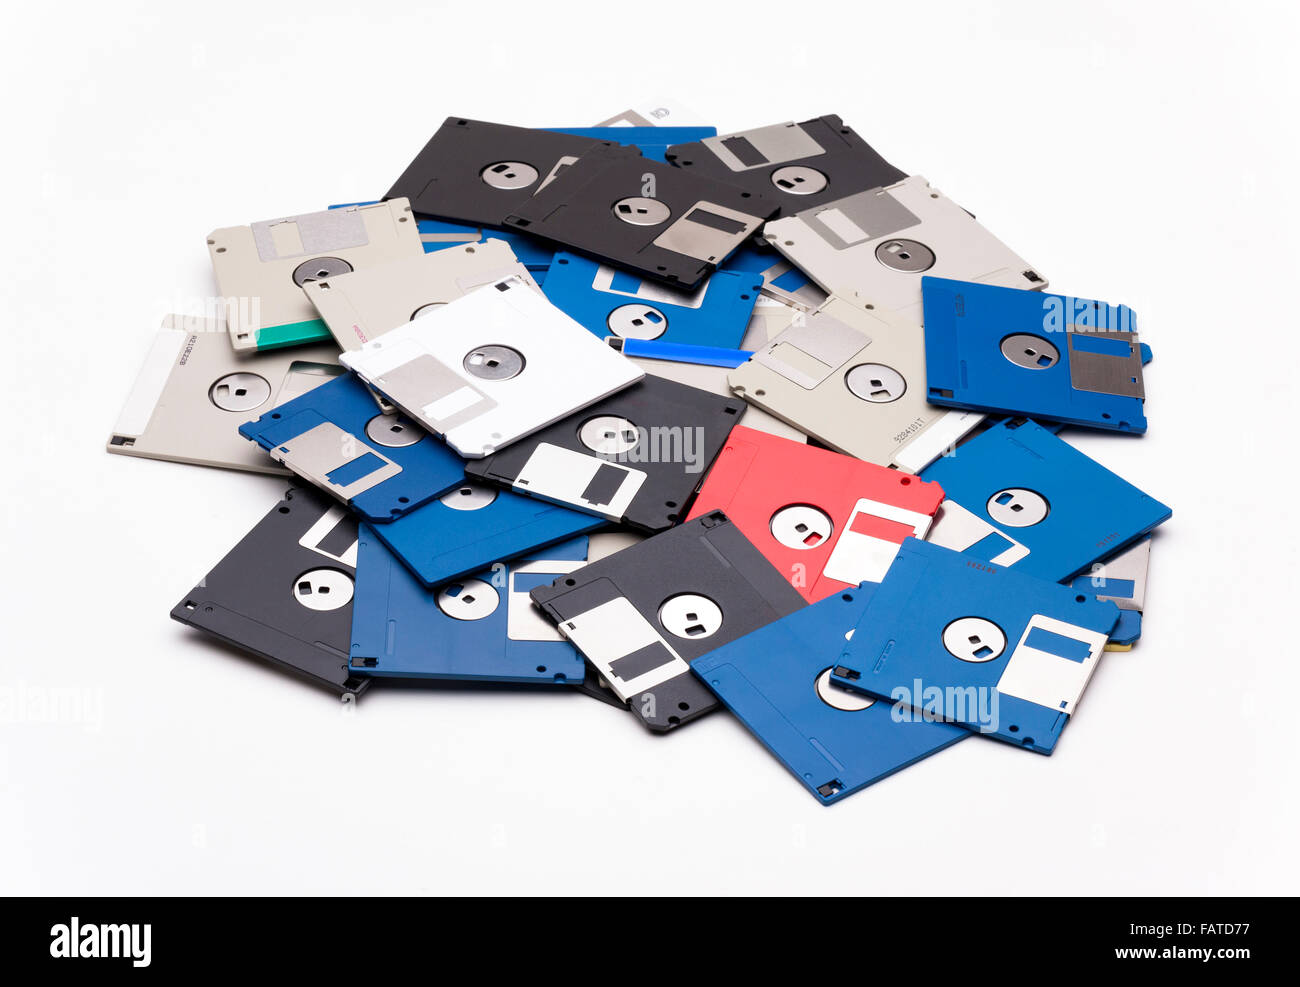 obsolete 3.5' floppy disks Stock Photo